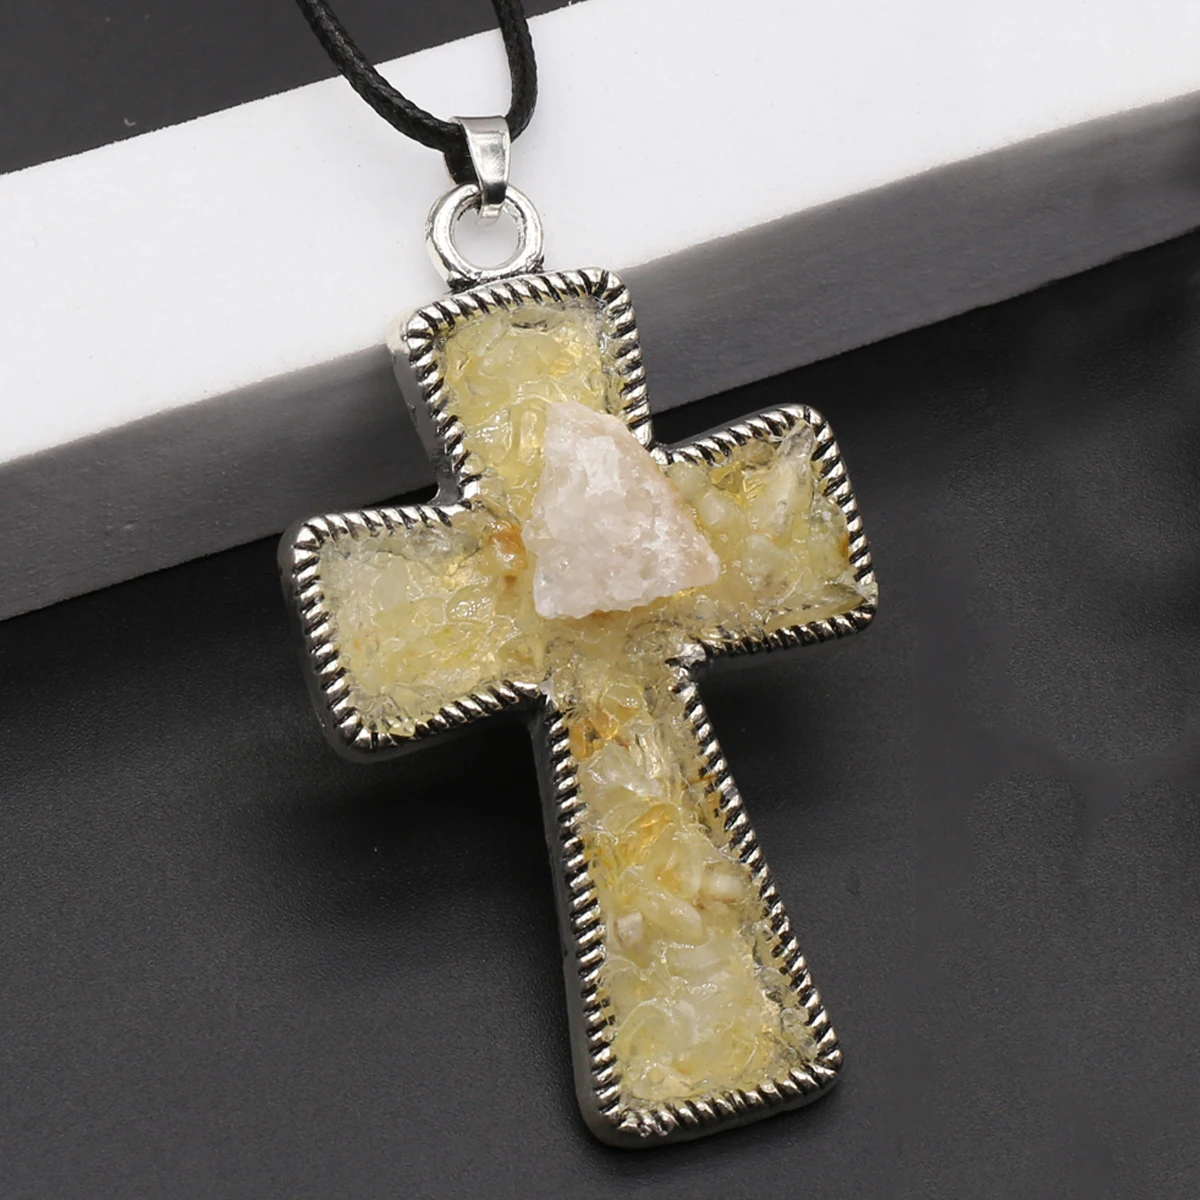 1шт Натуральный камень, полудрагоценный Цветной кристалл, высококачественная подвеска в виде креста, кожаное веревочное ожерелье в подарок Изображение 2